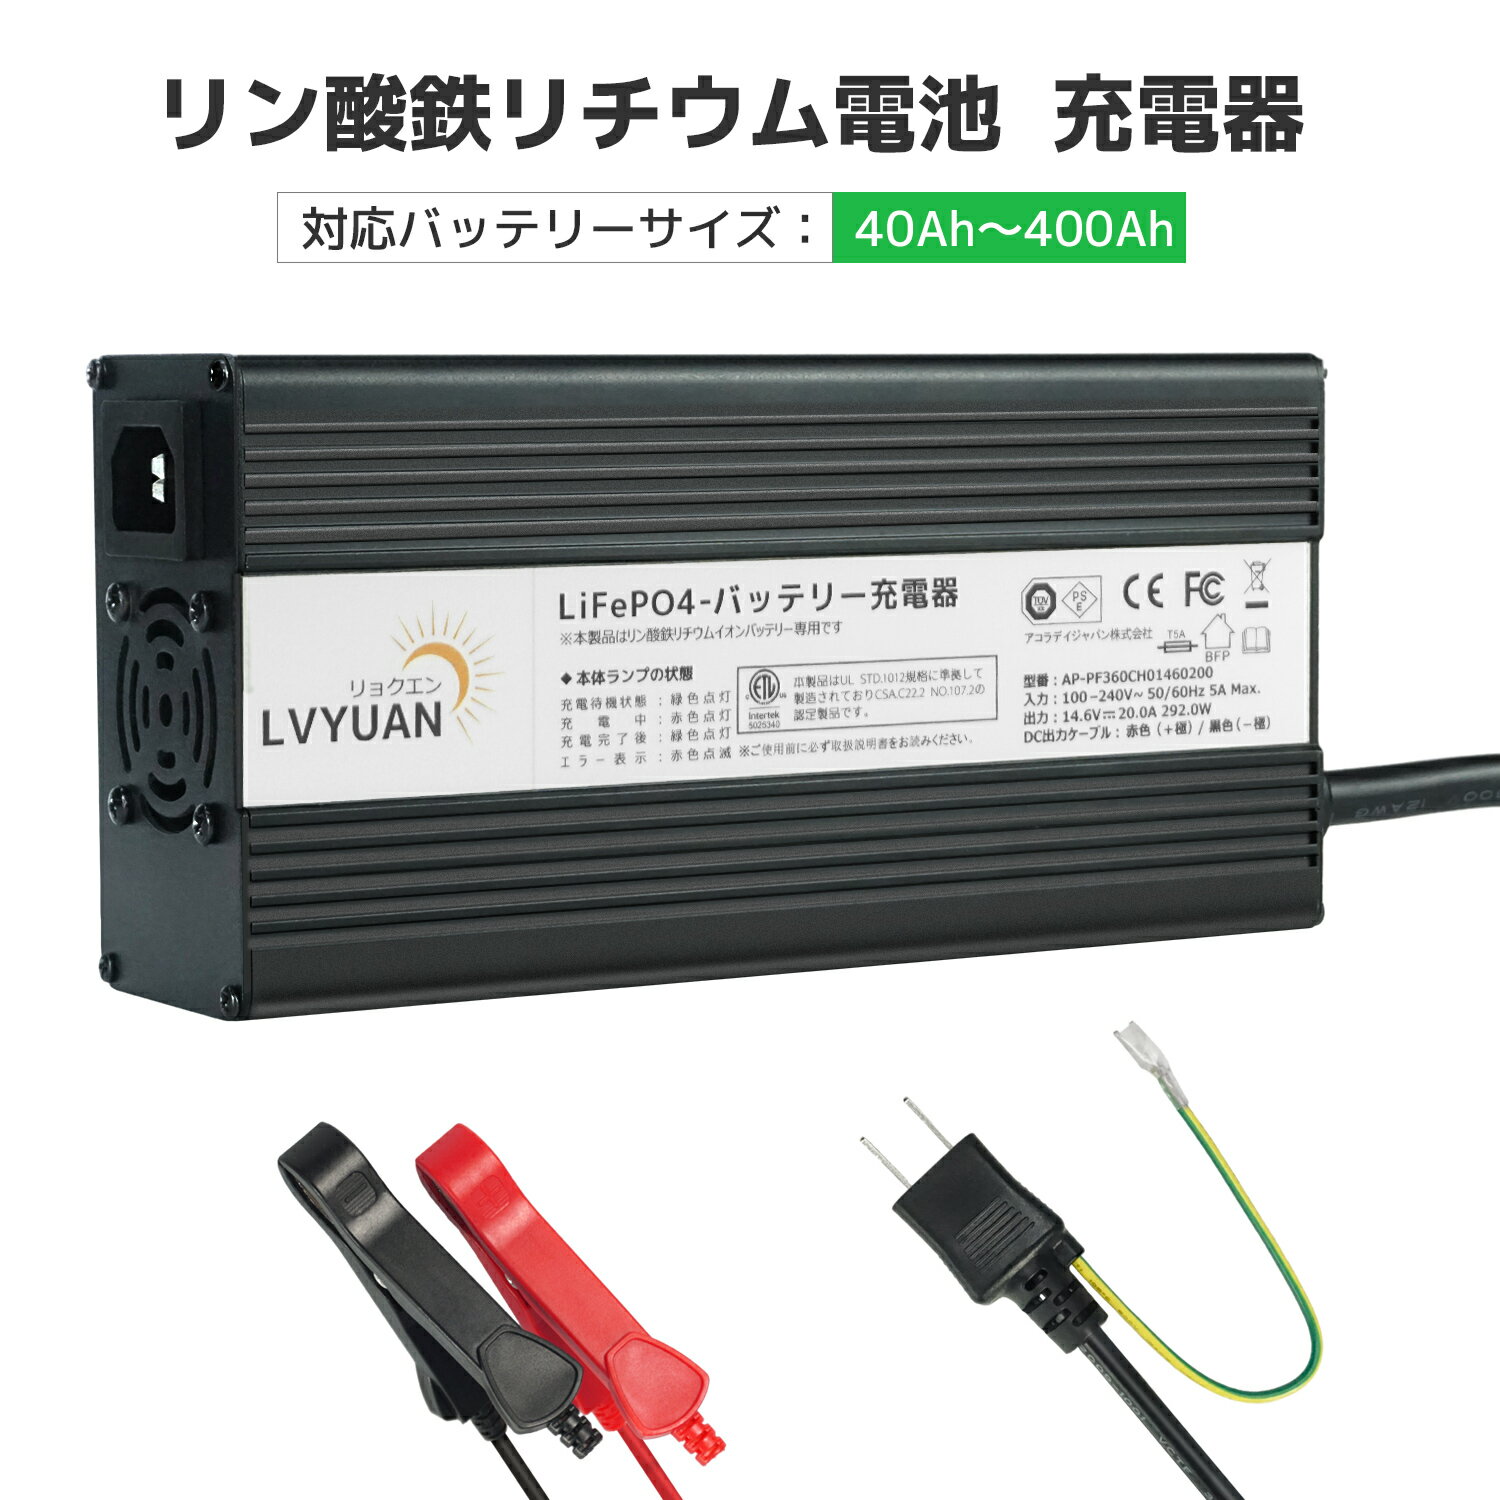 仕様 入力電圧範囲：AC100〜240V ；周波数：50Hz〜60Hz ；出力電圧：14.6Vdc ；出力電流：20A ；対応バッテリー容量：40AH〜400AH ；対応バッテリー電圧：12V；充電段階：3段階充電 ；寸法（mm）：203（L）× 100（W）× 54（H） ；重量：1.6Kg。 信頼できる充電システム この充電器は、高品質の軍用および産業用コンポーネントで構成されています。ISO 9001:2015品質管理体系に基づいた先進的な回路デザイン及び厳格な生産ポロシージャにより、充電器は低い不良率、高い信頼性、そして長い使用寿命を実現しています。信頼性の高い安全保護機能付き：過熱保護、出力短絡保護、逆接続保護、出力過電圧保護。 ㅤ 放熱性と耐久性に優れた素材を採用 充電器のカバーはアルミ合金で作られており、表面が酸化処理されており、放熱能力が優れており、硬度が高く、酸化や色あせに耐えます。合理な構造及び優れた放熱設計により、充電器は小型かつ軽量化され、優れた携帯性を持っています。 使いやすい、3段階充電 バッテリーを接続し、ソケットに差し込むだけで簡単に使用できます。自動的に3段階充電により、バッテリーを保護しながら確実にフル充電します。 ※注意※ 本製品は「リン酸鉄リチウムイオンバッテリー（LiFePO4）」専用のバッテリー充電器です。鉛バッテリー（GELやAGMを含む）ではご使用いただくことが出来ませんのでご注意ください。 安全保護機能 過熱保護：充電器内部の温度が保護点に達した場合、自動的に充電を停止し、LEDは赤く点滅して警告します。 出力短絡保護：充電器に短絡が発生した場合、自動的に充電を停止し、LEDは赤く点滅して警告します。 逆接続保護：バッテリーの正極及び負極が逆に接続された場合、自動的に充電を停止し、LEDは赤く点滅して警告します。 出力過電圧保護：充電器の出力電圧が過大な場合、自動的に充電を停止し、LEDは赤く点滅して警告します。 3段階充電 低電流充電段階（T1）：バッテリー電圧が通常の基準より低い場合、充電器は大電流で充電に耐えられません。それゆえ、充電器は小電流でバッテリーを充電します。これにより、バッテリーが活性化し、修復され、使用寿命が延びることができます。出力電圧が正常値に達すると、またはT1階段の充電時間が事前に設定された時間を超えた場合、充電器は自動的にT2高速充電段階に移行します 。 高速充電段階（T2）：バッテリーが高速充電段階に移行場合、充電器は定常な最 大電流でバッテリーを充電します。バッテリー電圧が設定値に上がりますと、充電器は定電圧充電段階に自動的に移行します。 定電圧充電段階（T3）：充電器は定電圧充電段階に移行し、充電電流が段々に下がる。充電量が設定値に達するまたはT3階段に入ると、充電器は自動的に出力を遮断し、バッテリーの充電が完了します。 バッテリー電圧が6Vまで低下しても充電を開始できます。 スイッチング電源及びマイコン制御充電技術により、独占技術のプリチャージモードは、バッテリーの活性化、修復、バッテリーの寿命が大幅に延ばします。 弊社の製品に関するご質問等がございましたら、お気軽にお問い合わせください。 ※土・日曜日及び祝日の場合は、返事が遅くなる場合がありますので、是非ご了承くださいませ